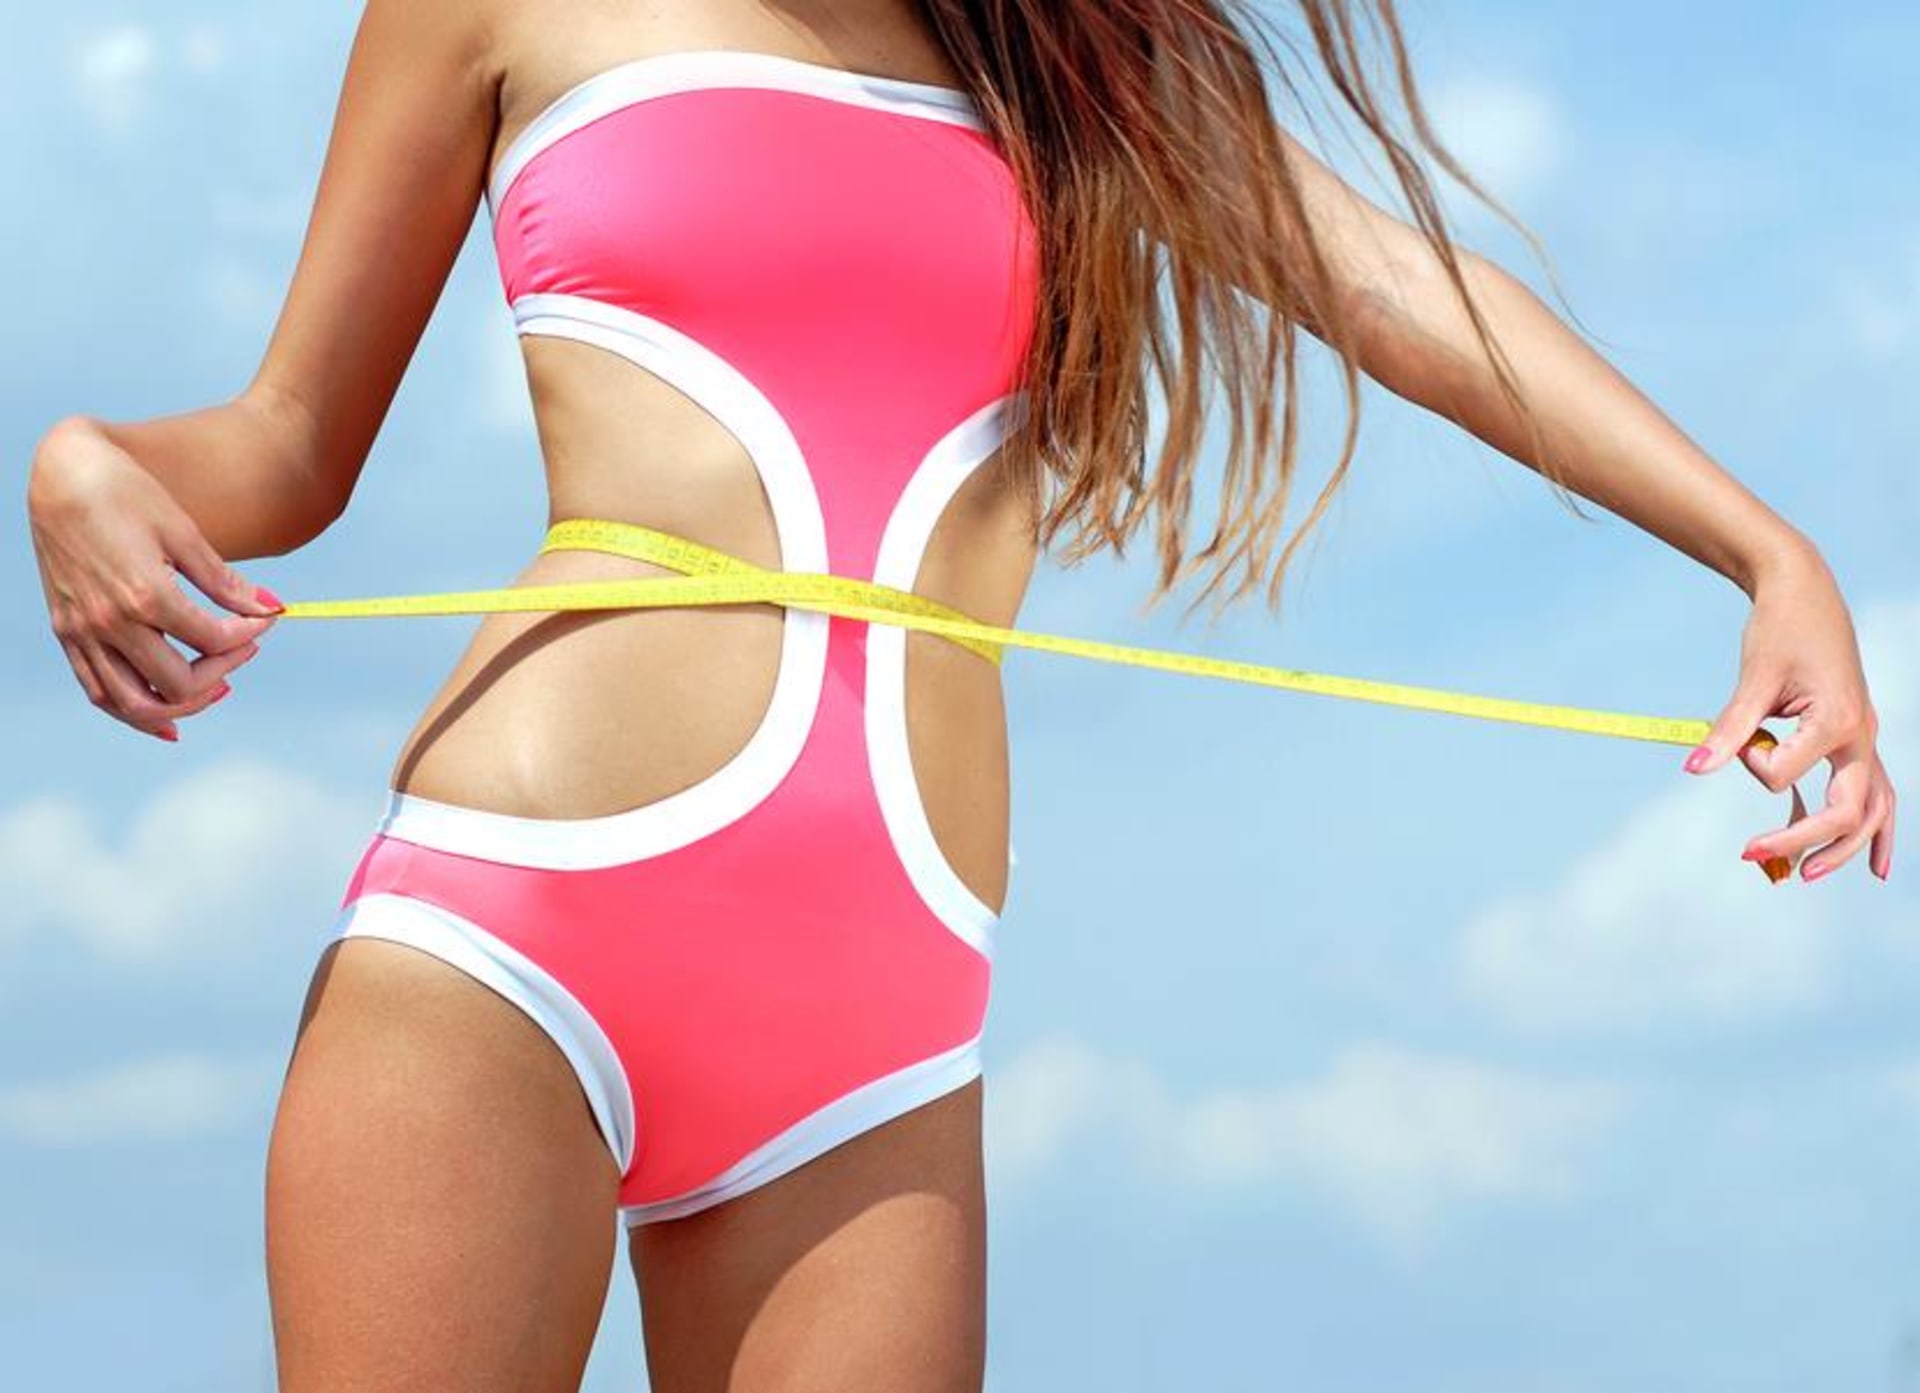 MANUÁL: 10 tajných tipů, díky kterým okamžitě zhubnete